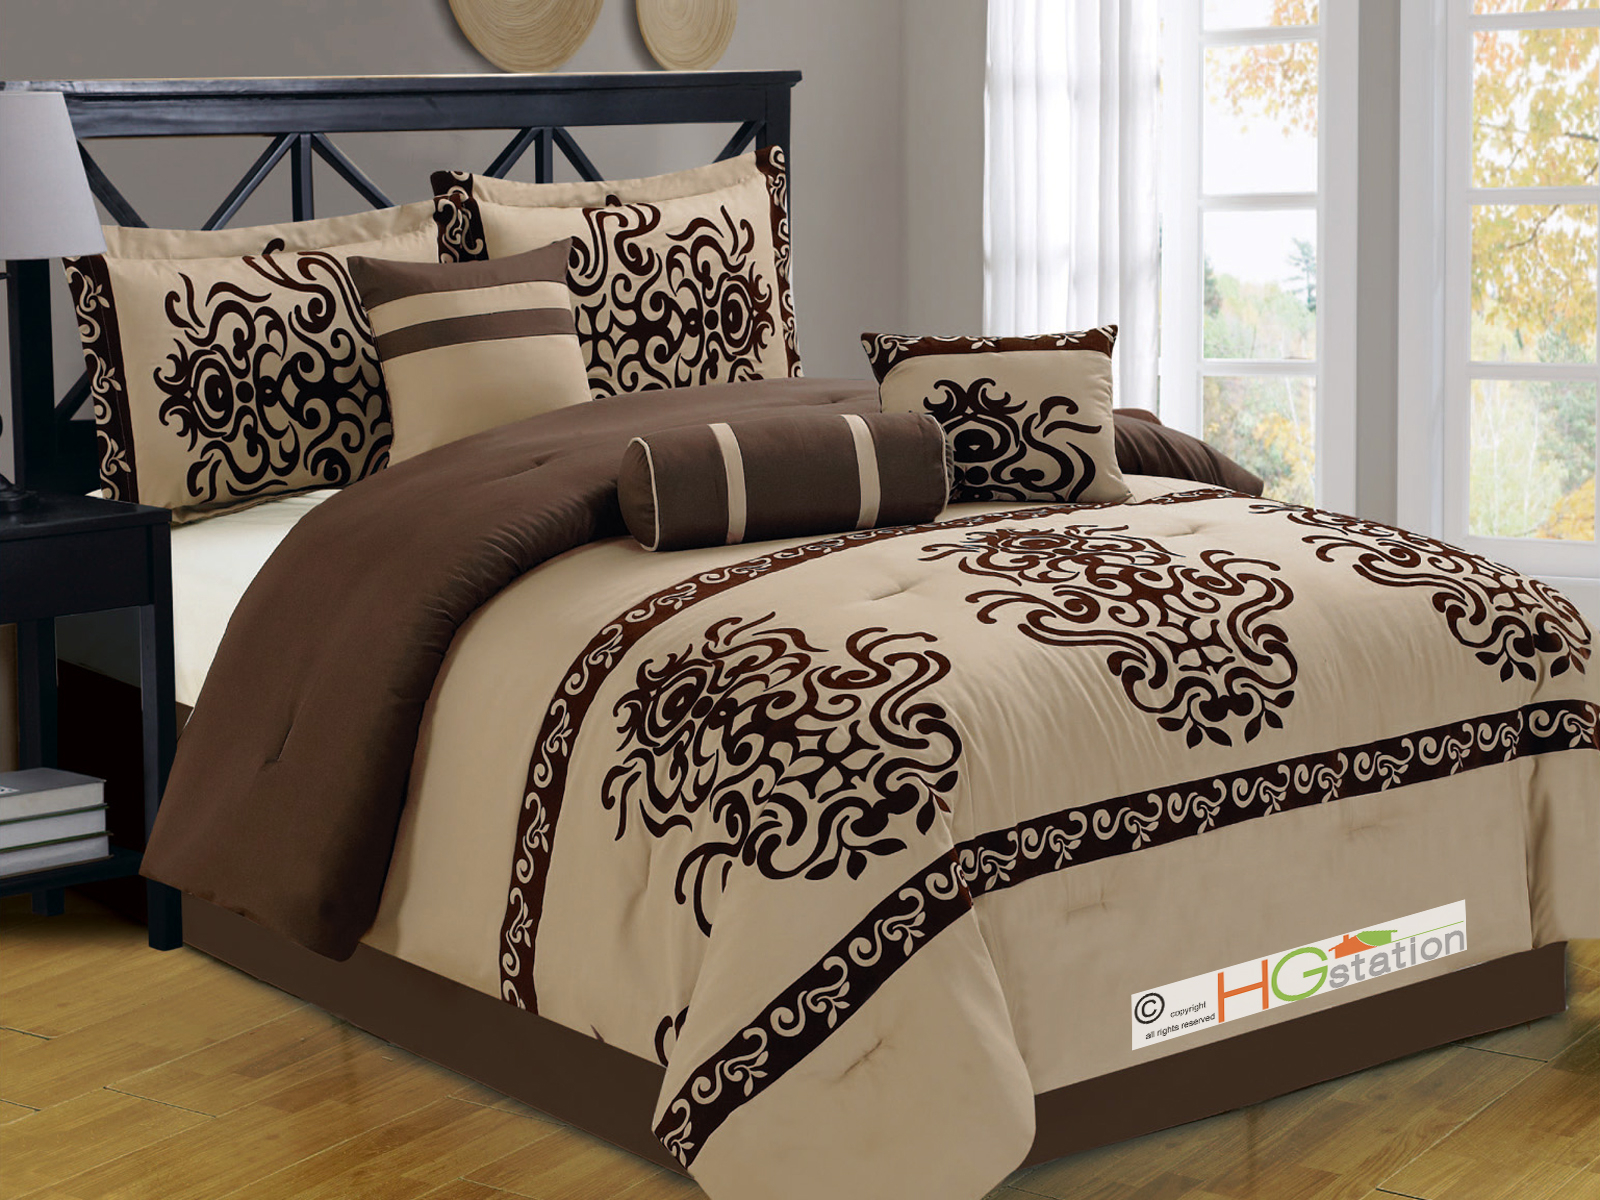 Oversized King Comforter Sets Visualhunt, Bed Bath And Beyond Oversized King Comforter